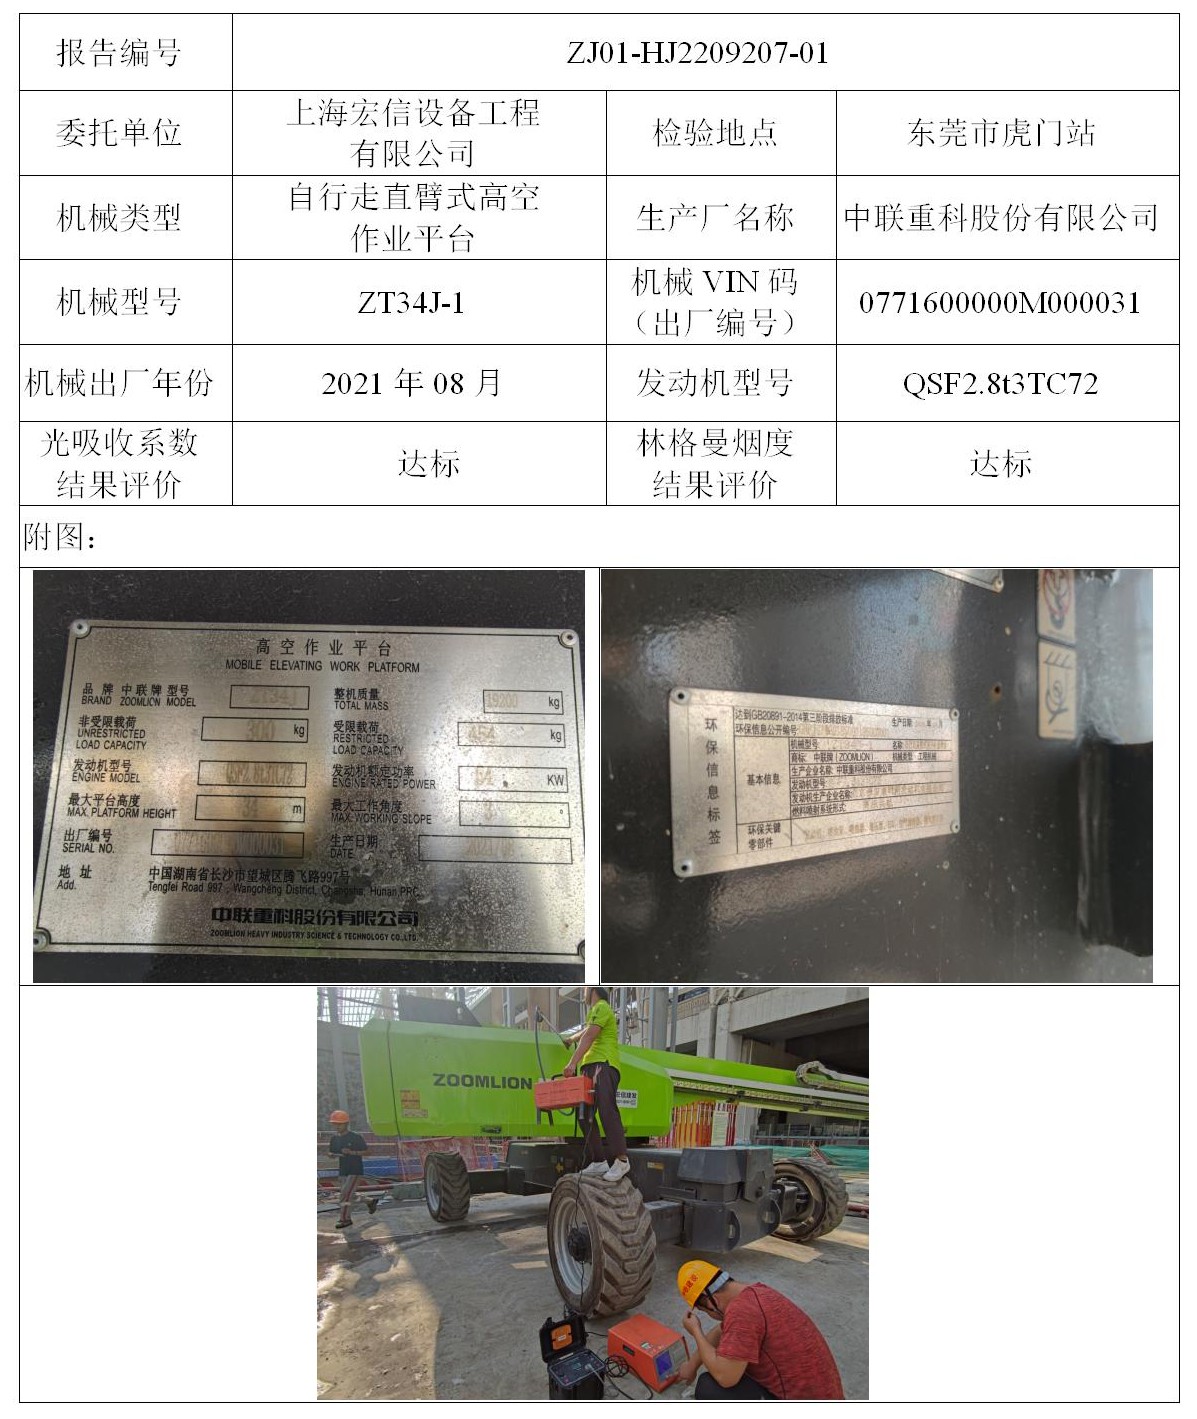 委托-ZJ01-HJ2209207-01上海宏信设备工程有限公司（叉车废气）二维码-张伟仪_01.jpg